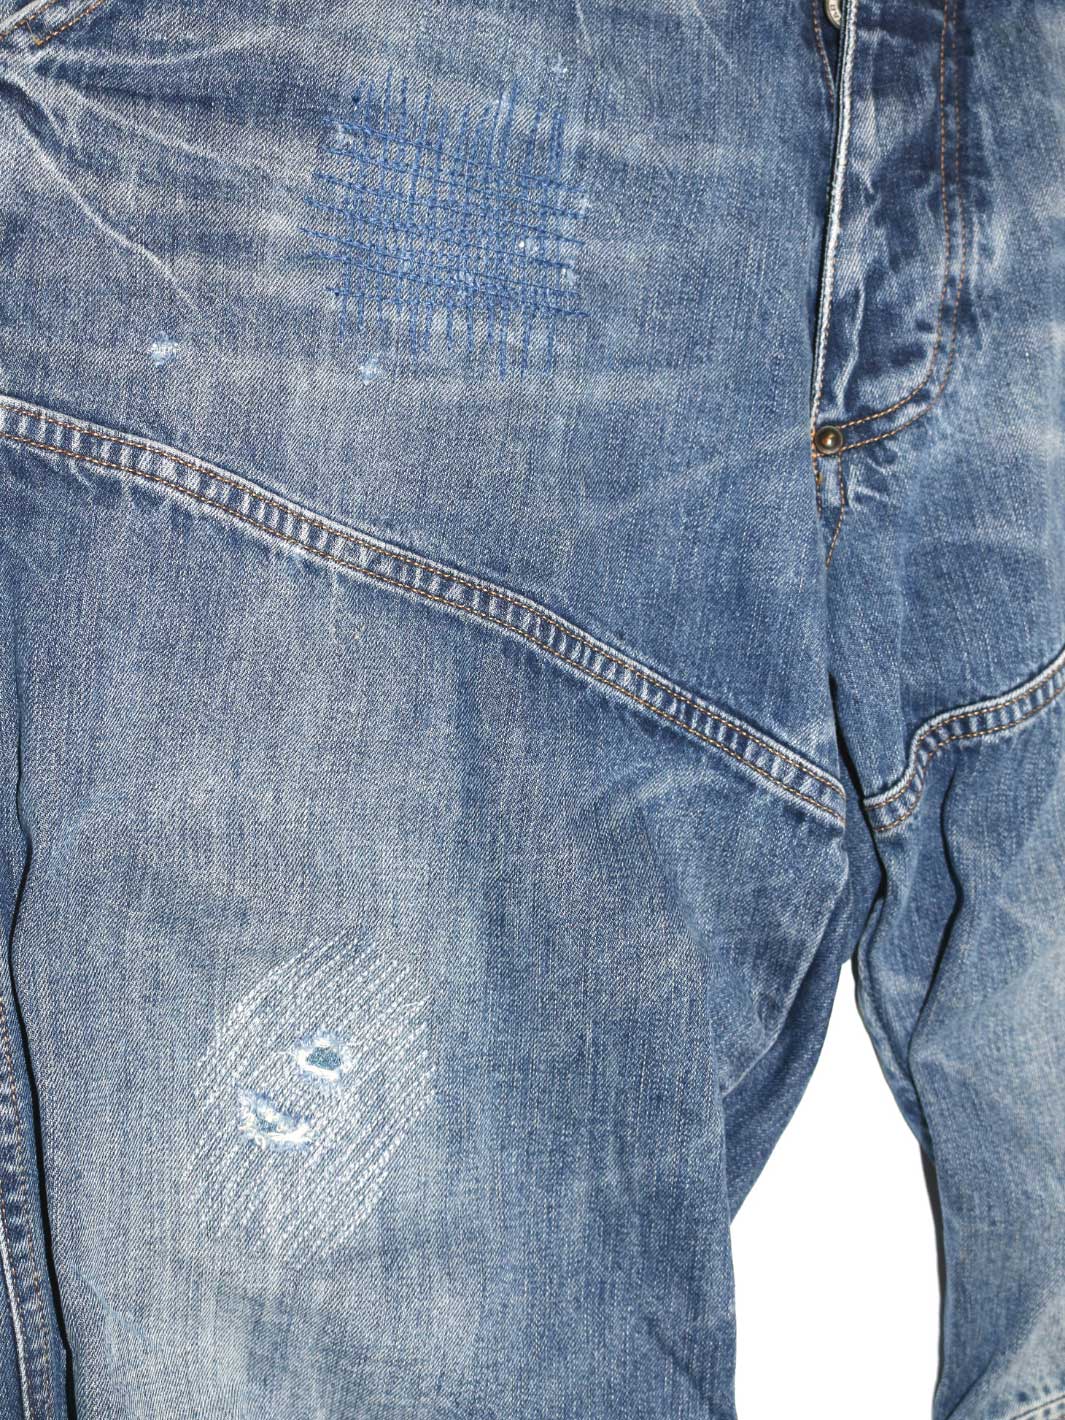 Herren upcyclet Vintage Jeans mittelblau Teilungsnaht auf Oberschenkel Repairstitching